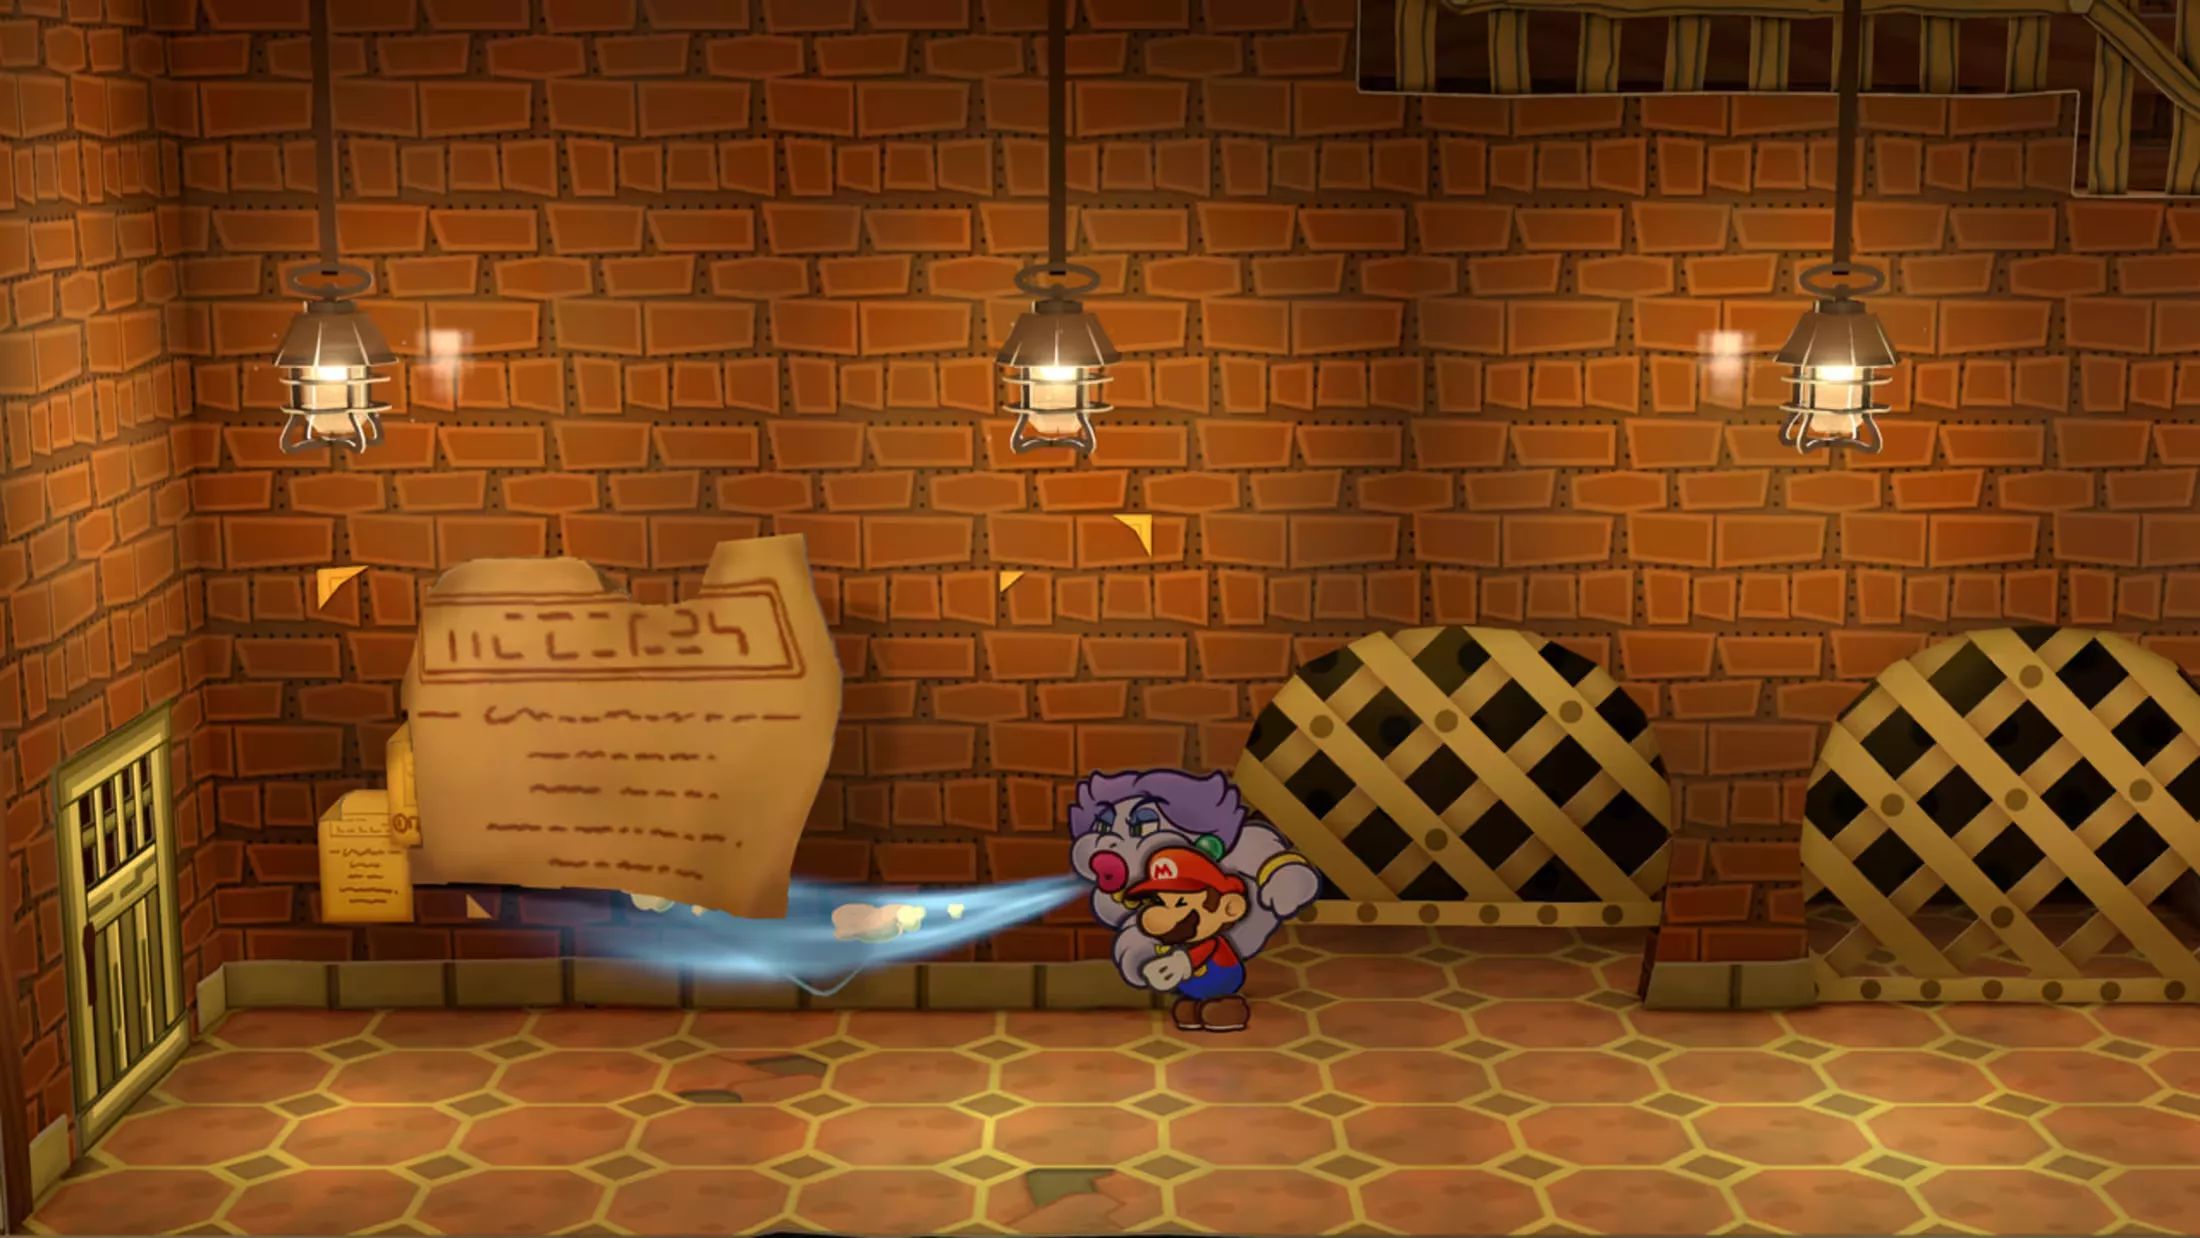 Überblickstrailer zu Paper Mario: Die Legende vom Äonentor veröffentlicht Heropic